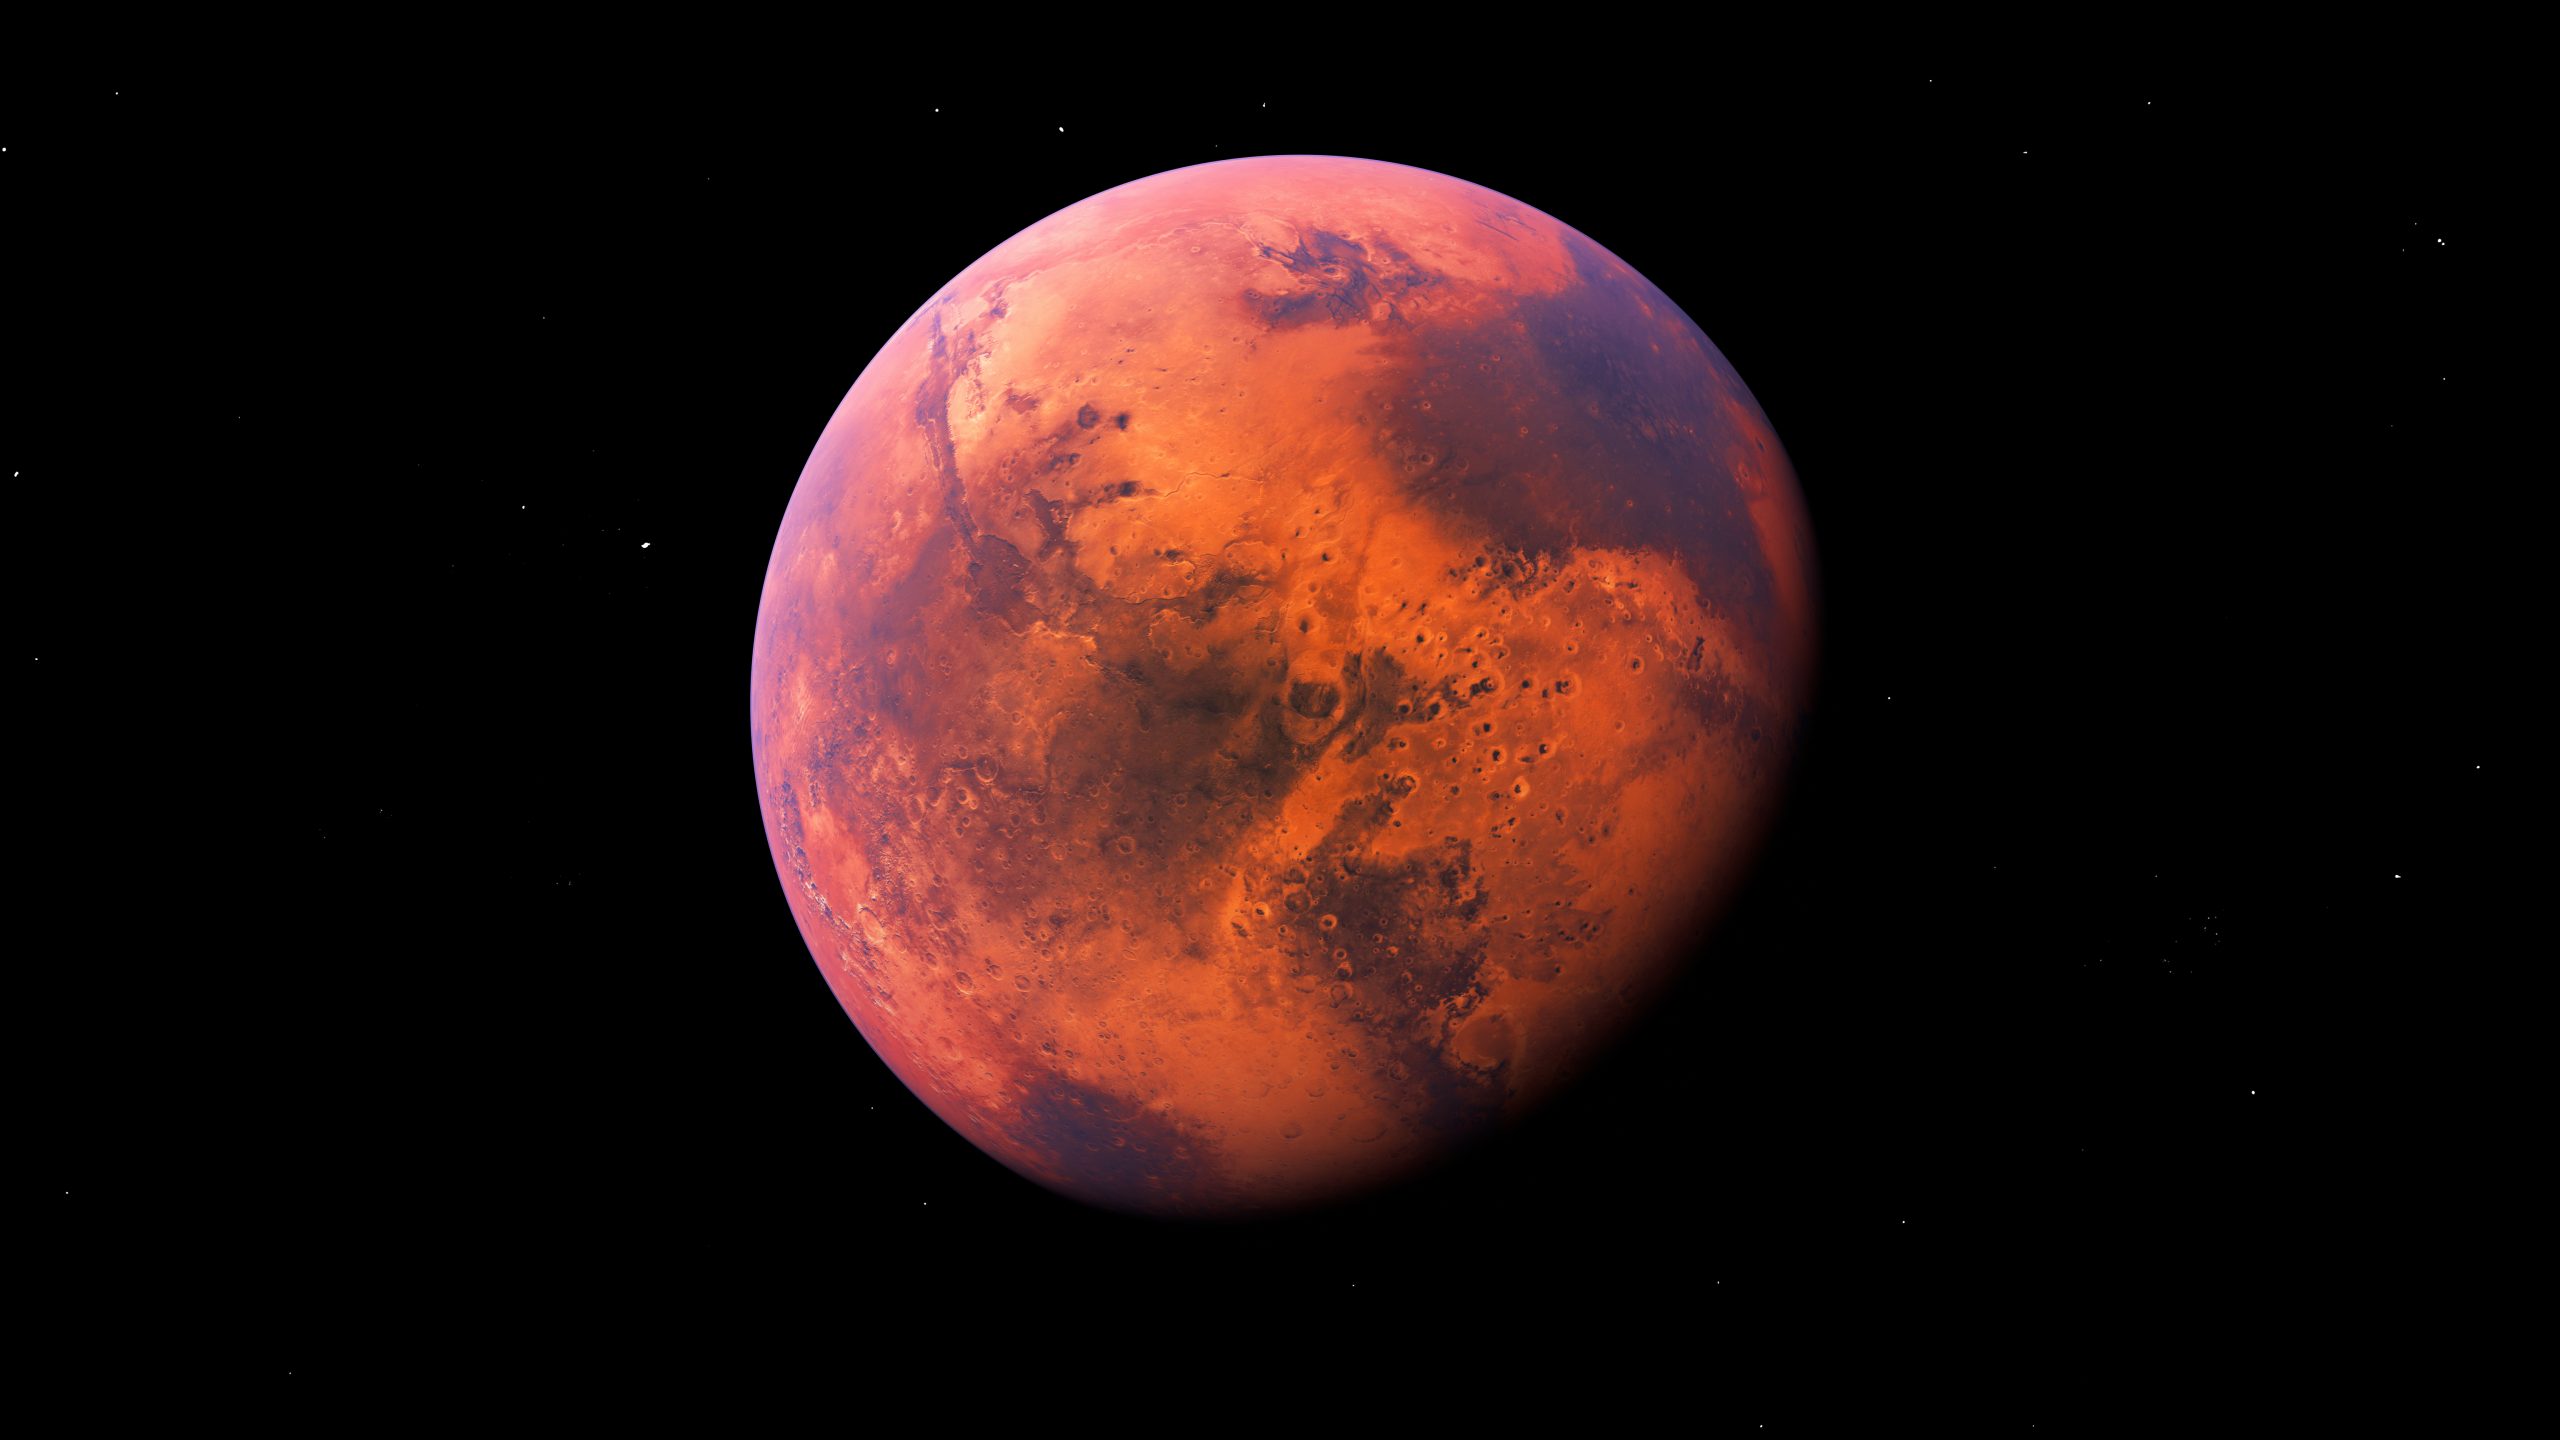 Imagem ilustrativa mostra Marte, o planeta vermelho em estudo pela NASA